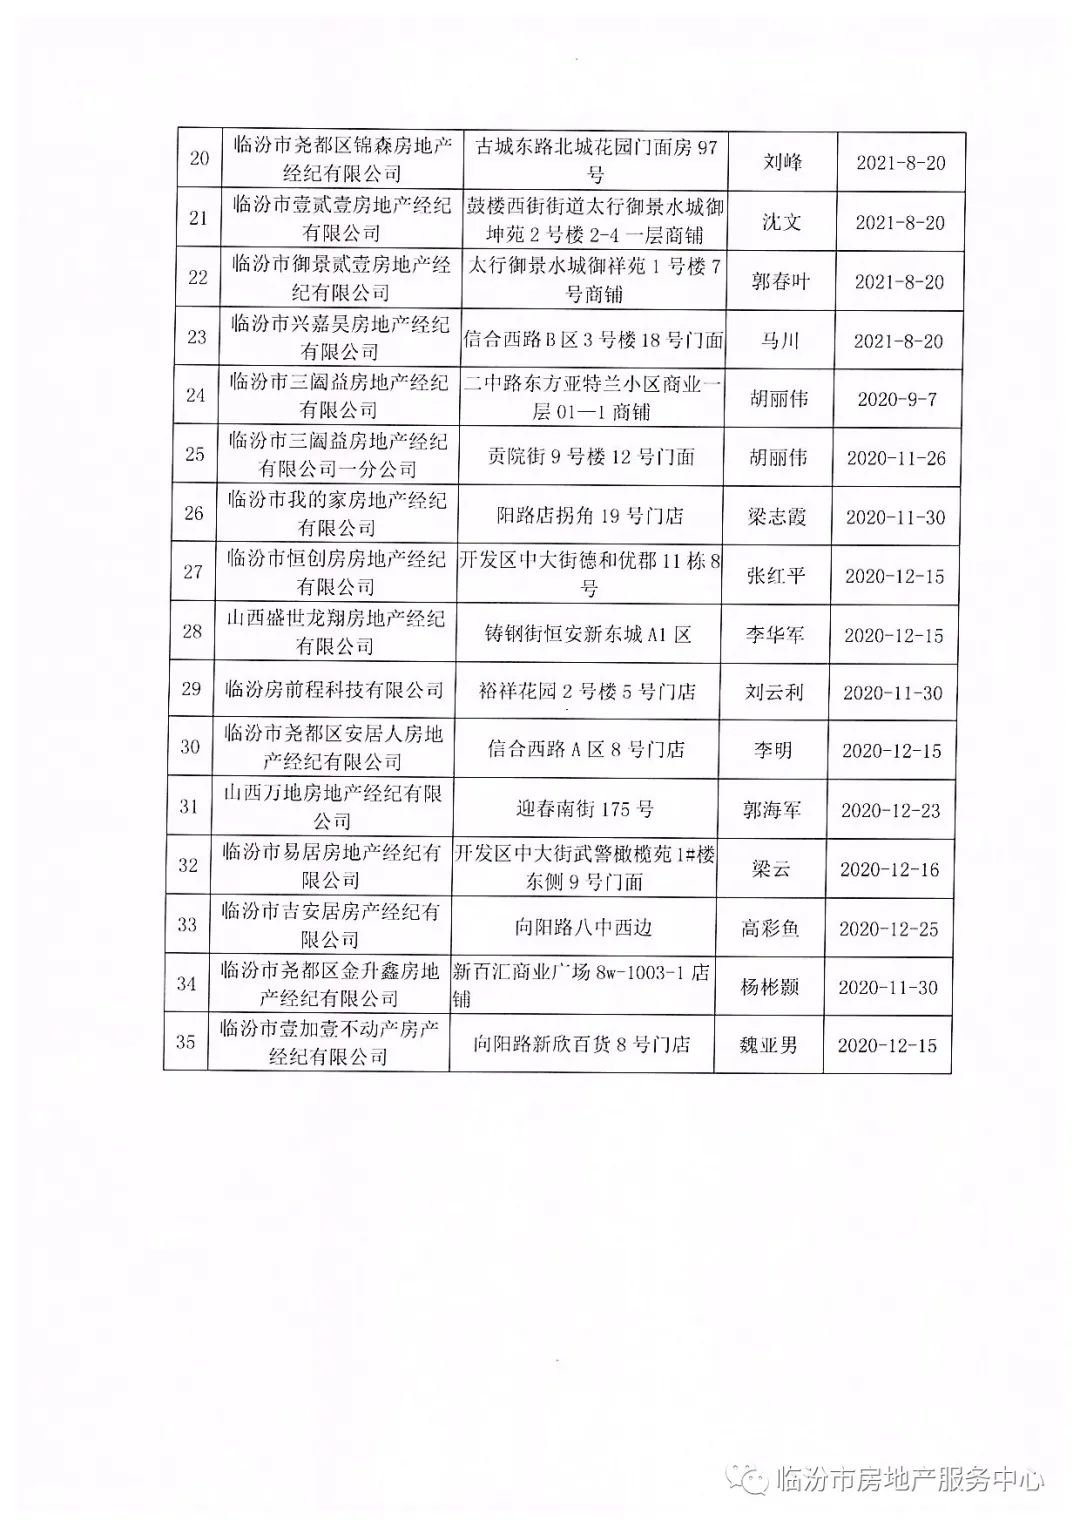 【公示】临汾市房地产服务中心 市区房地产经纪机构备案名单公示